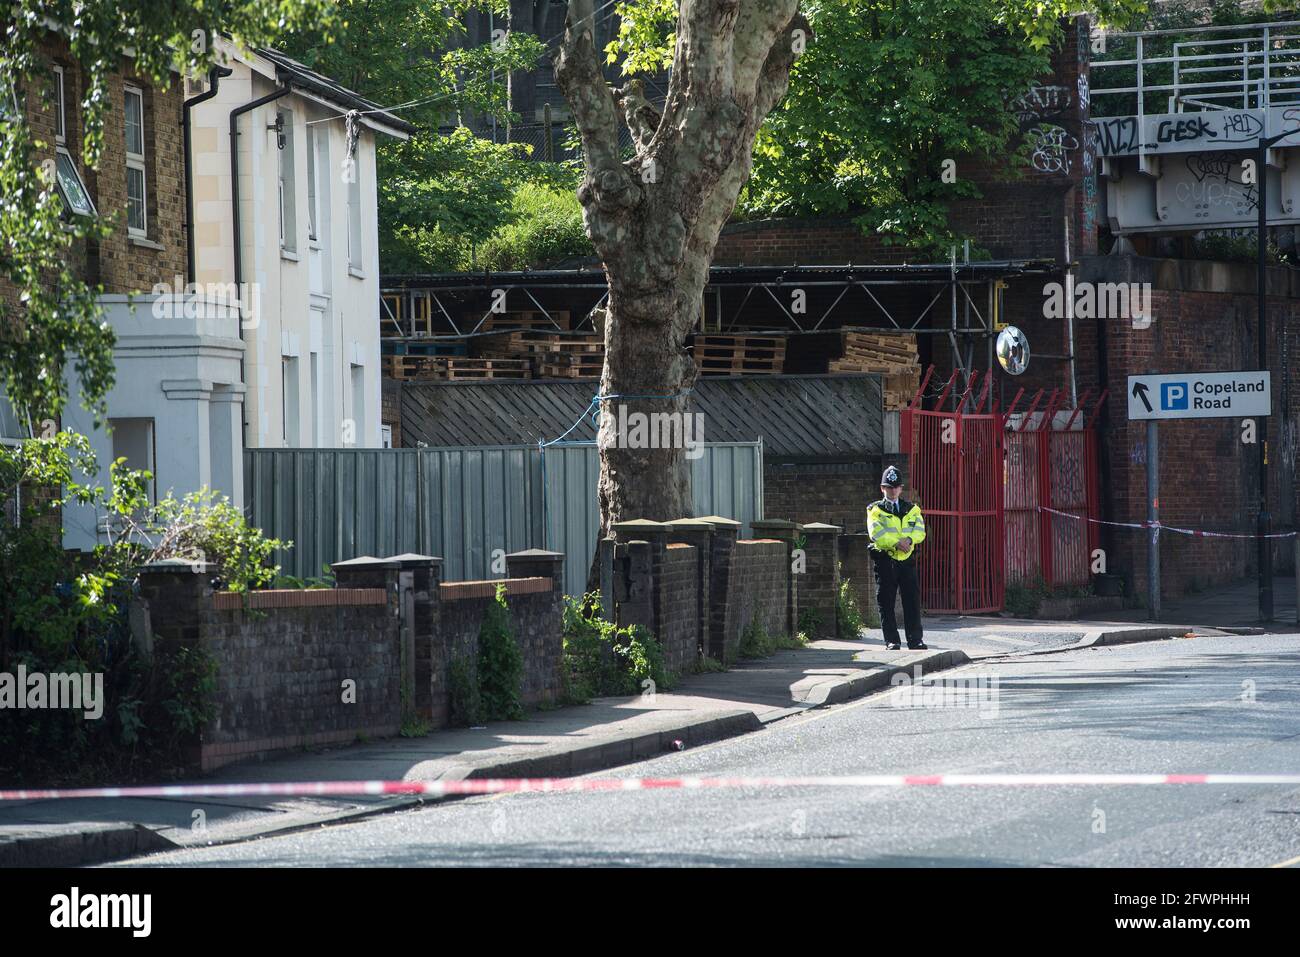 Szene einer Schießerei auf die Aktivistin von Black Lives Matter Sasha Johnson, Consort Road, Peckham, South London, Großbritannien 23. Mai 2021 Stockfoto